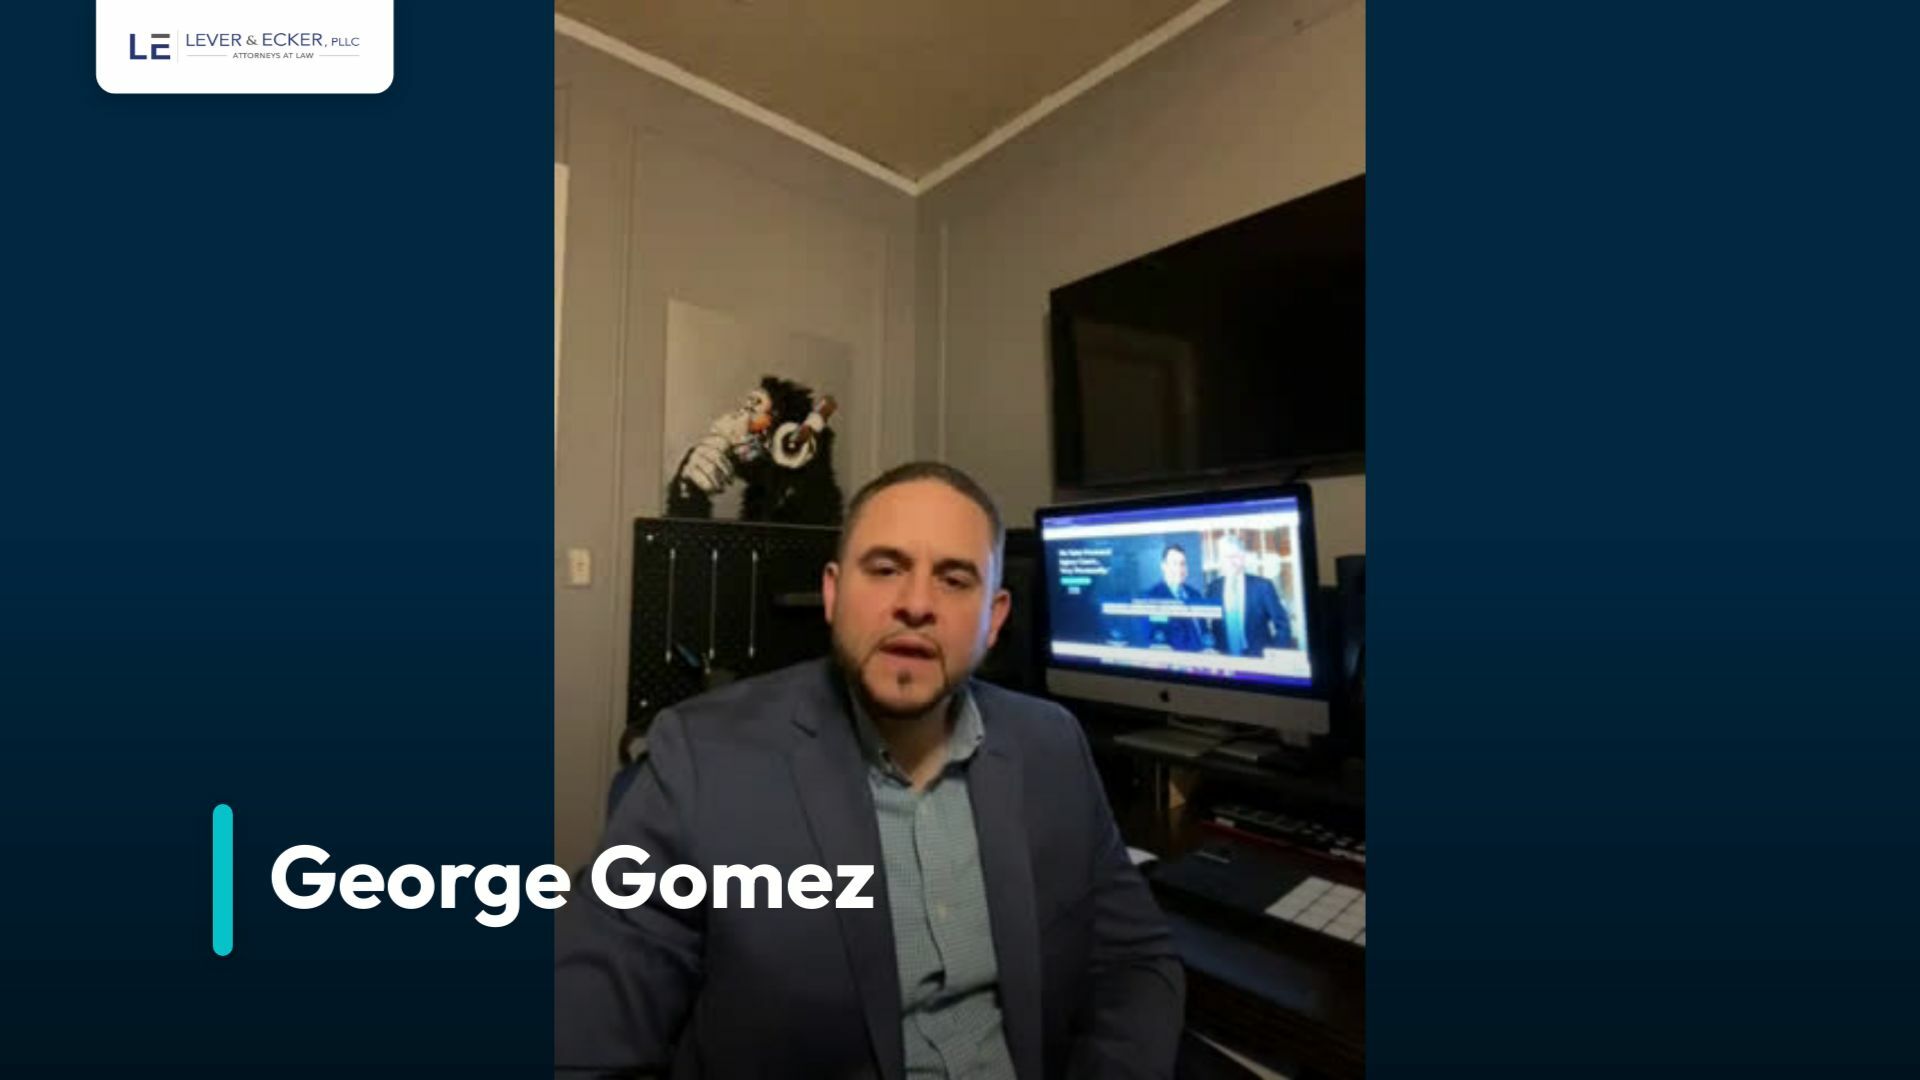 George Gomez